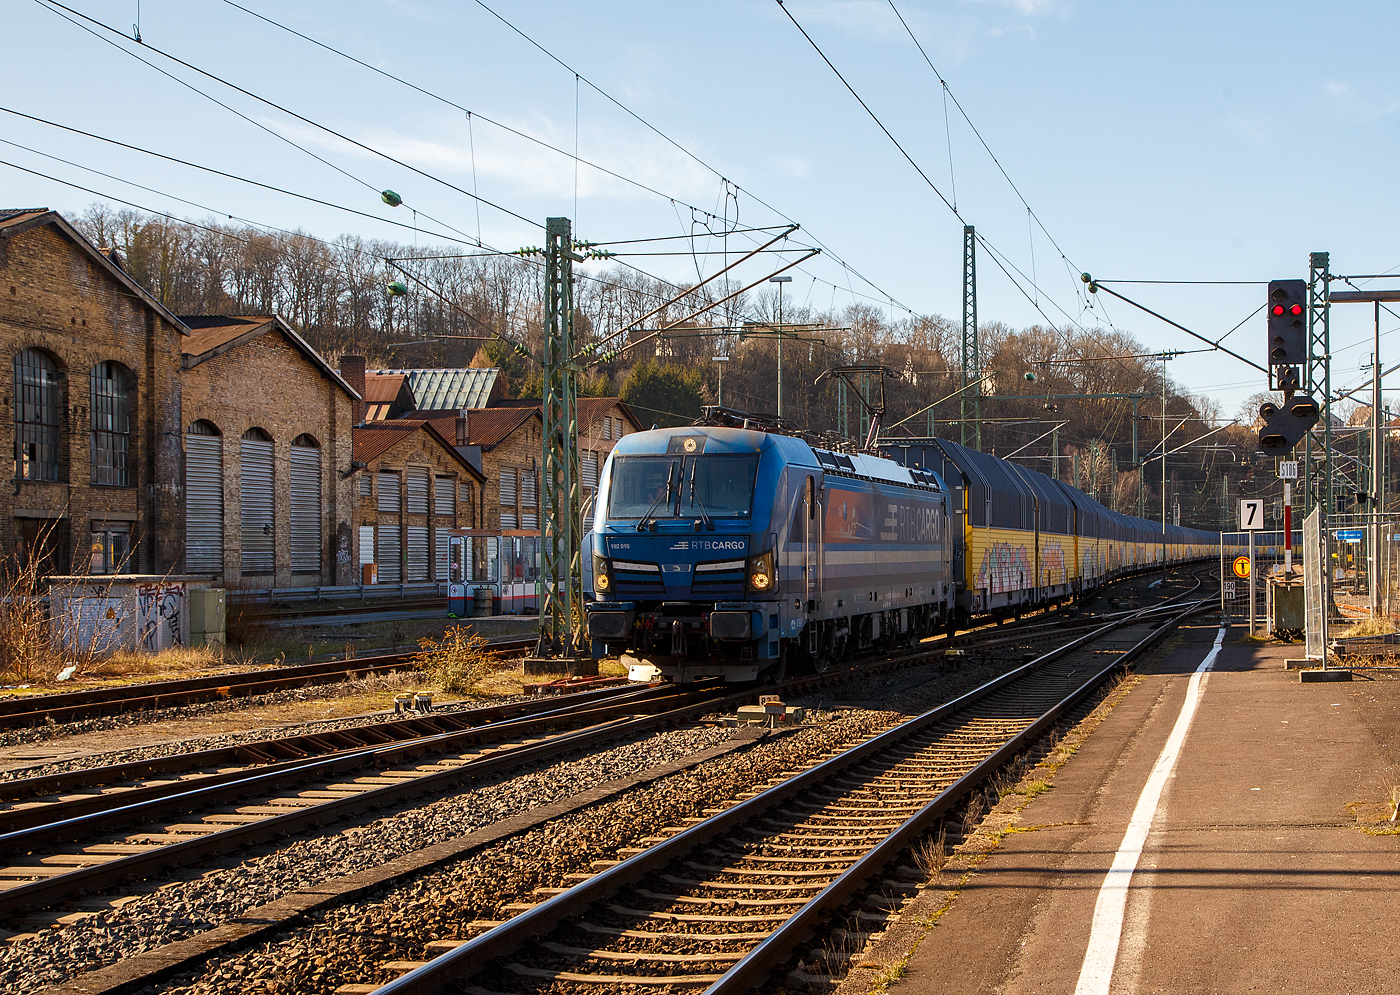 So langsam sieht man immer mehr SIEMENS Smartron Loks, sie sind ja reine für den Güterverkehr in Deutschland konzipierte Lokomotiven. Der Smartron basiert auf bewährten Komponenten des Vectron, ist somit quasi eine abgespeckte und preislich günstigere Vectron und nutzt alle Vorteile der Standardisierung. Auch eine Doppeltraktion mit dem SIEMENS Vectron und SIEMENS ES64F4 ist möglich.

Hier fährt der, an die RTB Cargo (RATH Gruppe/Rurtalbahn) vermietete, SIEMENS Smartron 192 016-4 (91 80 6192 016-4 D-NRail) der Paribus Rail Portfolio III GmbH & Co. KG (Hamburg), eingestellt bei northrail GmbH (Hamburg), am 02.03.2023 mit einem sehr langen geschlossen Doppelstock- Autotransportzug der ARS Altmann AG (mit Wagen der Gattung Hccrrs), durch den Bahnhof Betzdorf (Sieg) in Richtung Siegen. 

Nochmals einen lieben Gruß an den netten Lokführer zurück.

Der SIEMENS Smartron wurde 2020 von Siemens Mobilitiy in München-Allach unter der Fabriknummer 22818 gebaut und an die Paribus Rail Portfolio III die Loks der northrail GmbH (Hamburg) finanziert. Leider wird heutzutage das Einsortieren der Loks immer schwieriger, wie hier Eigentümer (Paribus Rail Portfolio III), Eisteller (northrail GmbH), Mieter (RTB Cargo zur RATH Gruppe/Rurtalbahn). Oder wie z.B. bei den für die SBB Cargo International (SBBCI)  fahrenden SIEMENS Vectron MS, wo es noch extremer ist und viele meinen es seien Schweizer Loks, es sind aber Deutsche Lok: Eigentümer ist dort die SüdLeasing GmbH, Eisteller ist SIEMENS und Mieter ist die SBB Cargo International.